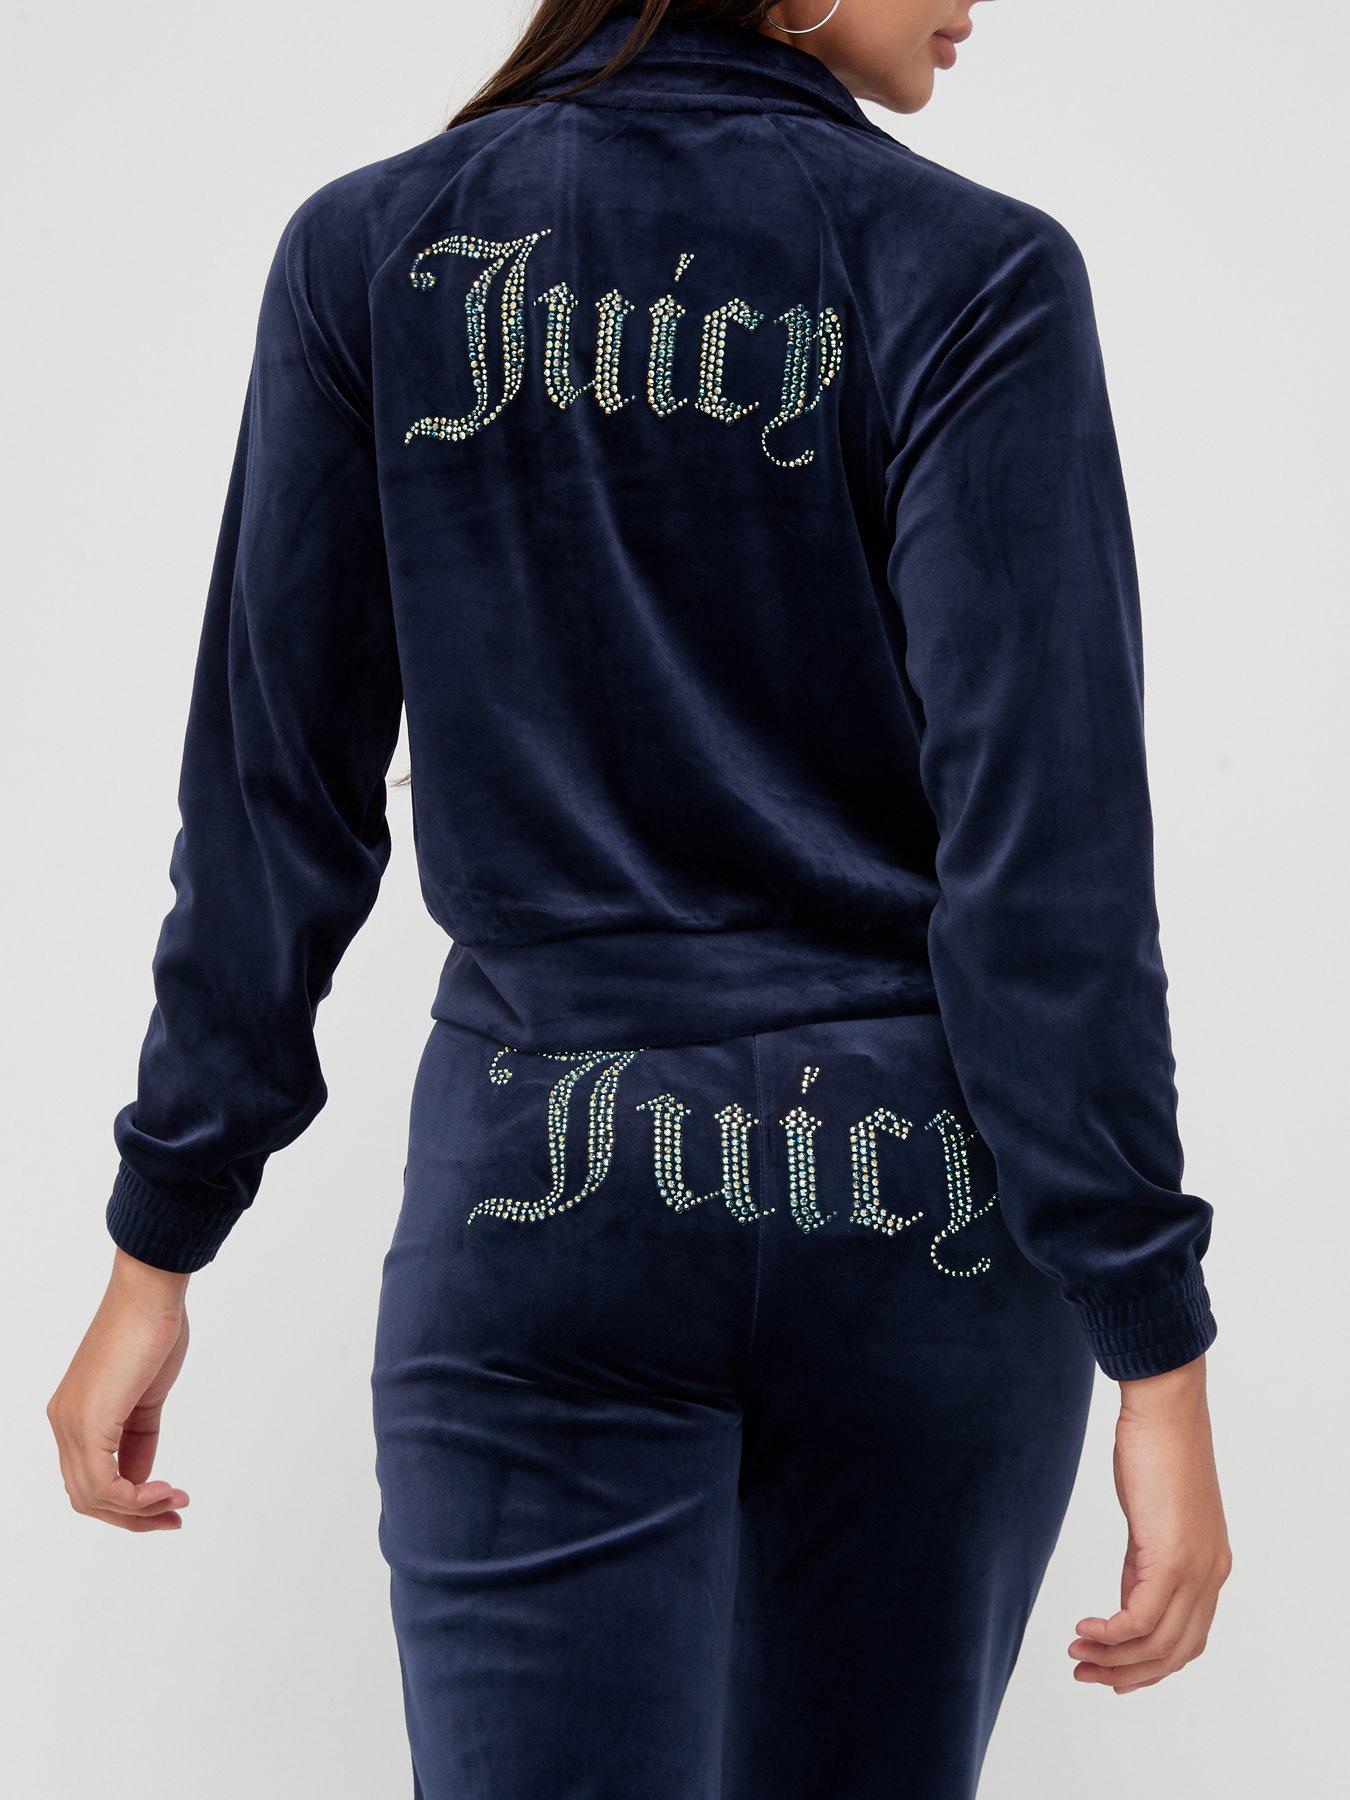 Juicy couture velour pant – ASPHALT